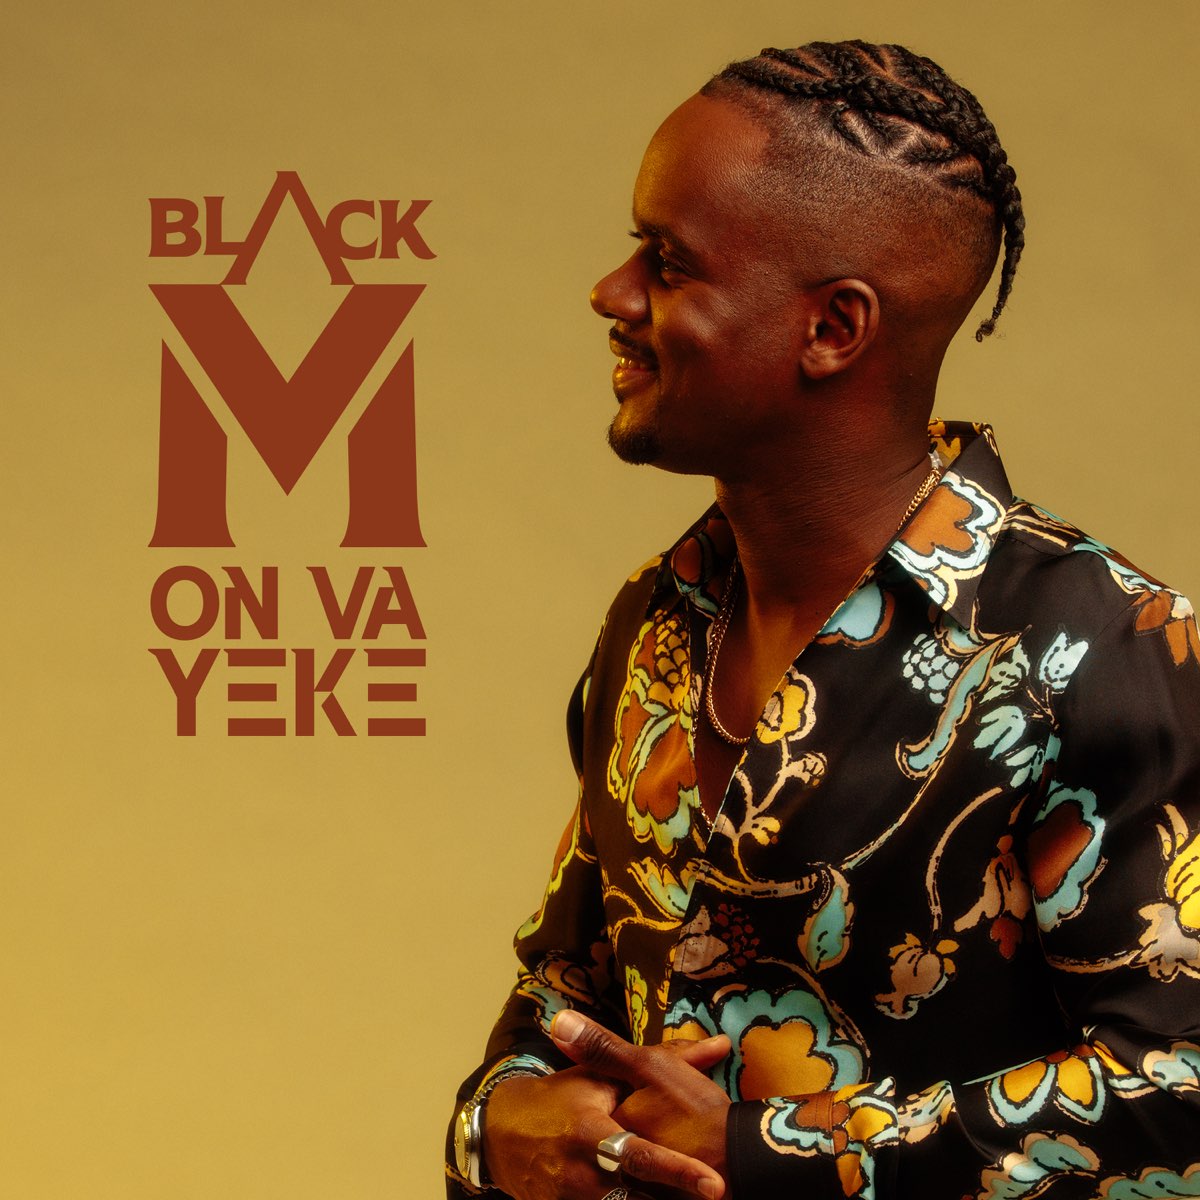 ON VA YEKE (feat. Amaya & Maysha) - Single by Black M on Apple Music